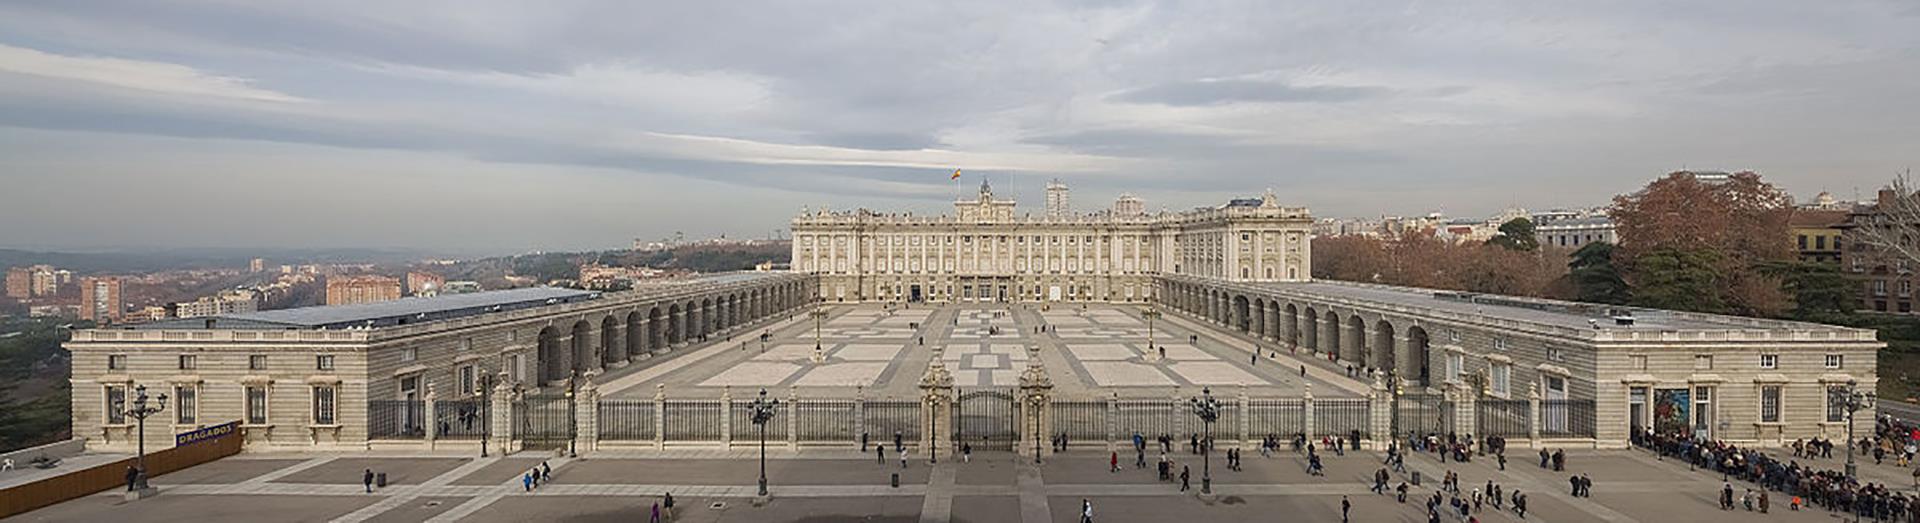 Essential-Madrid:-Prado-Museum-and-Royal-Palace-16